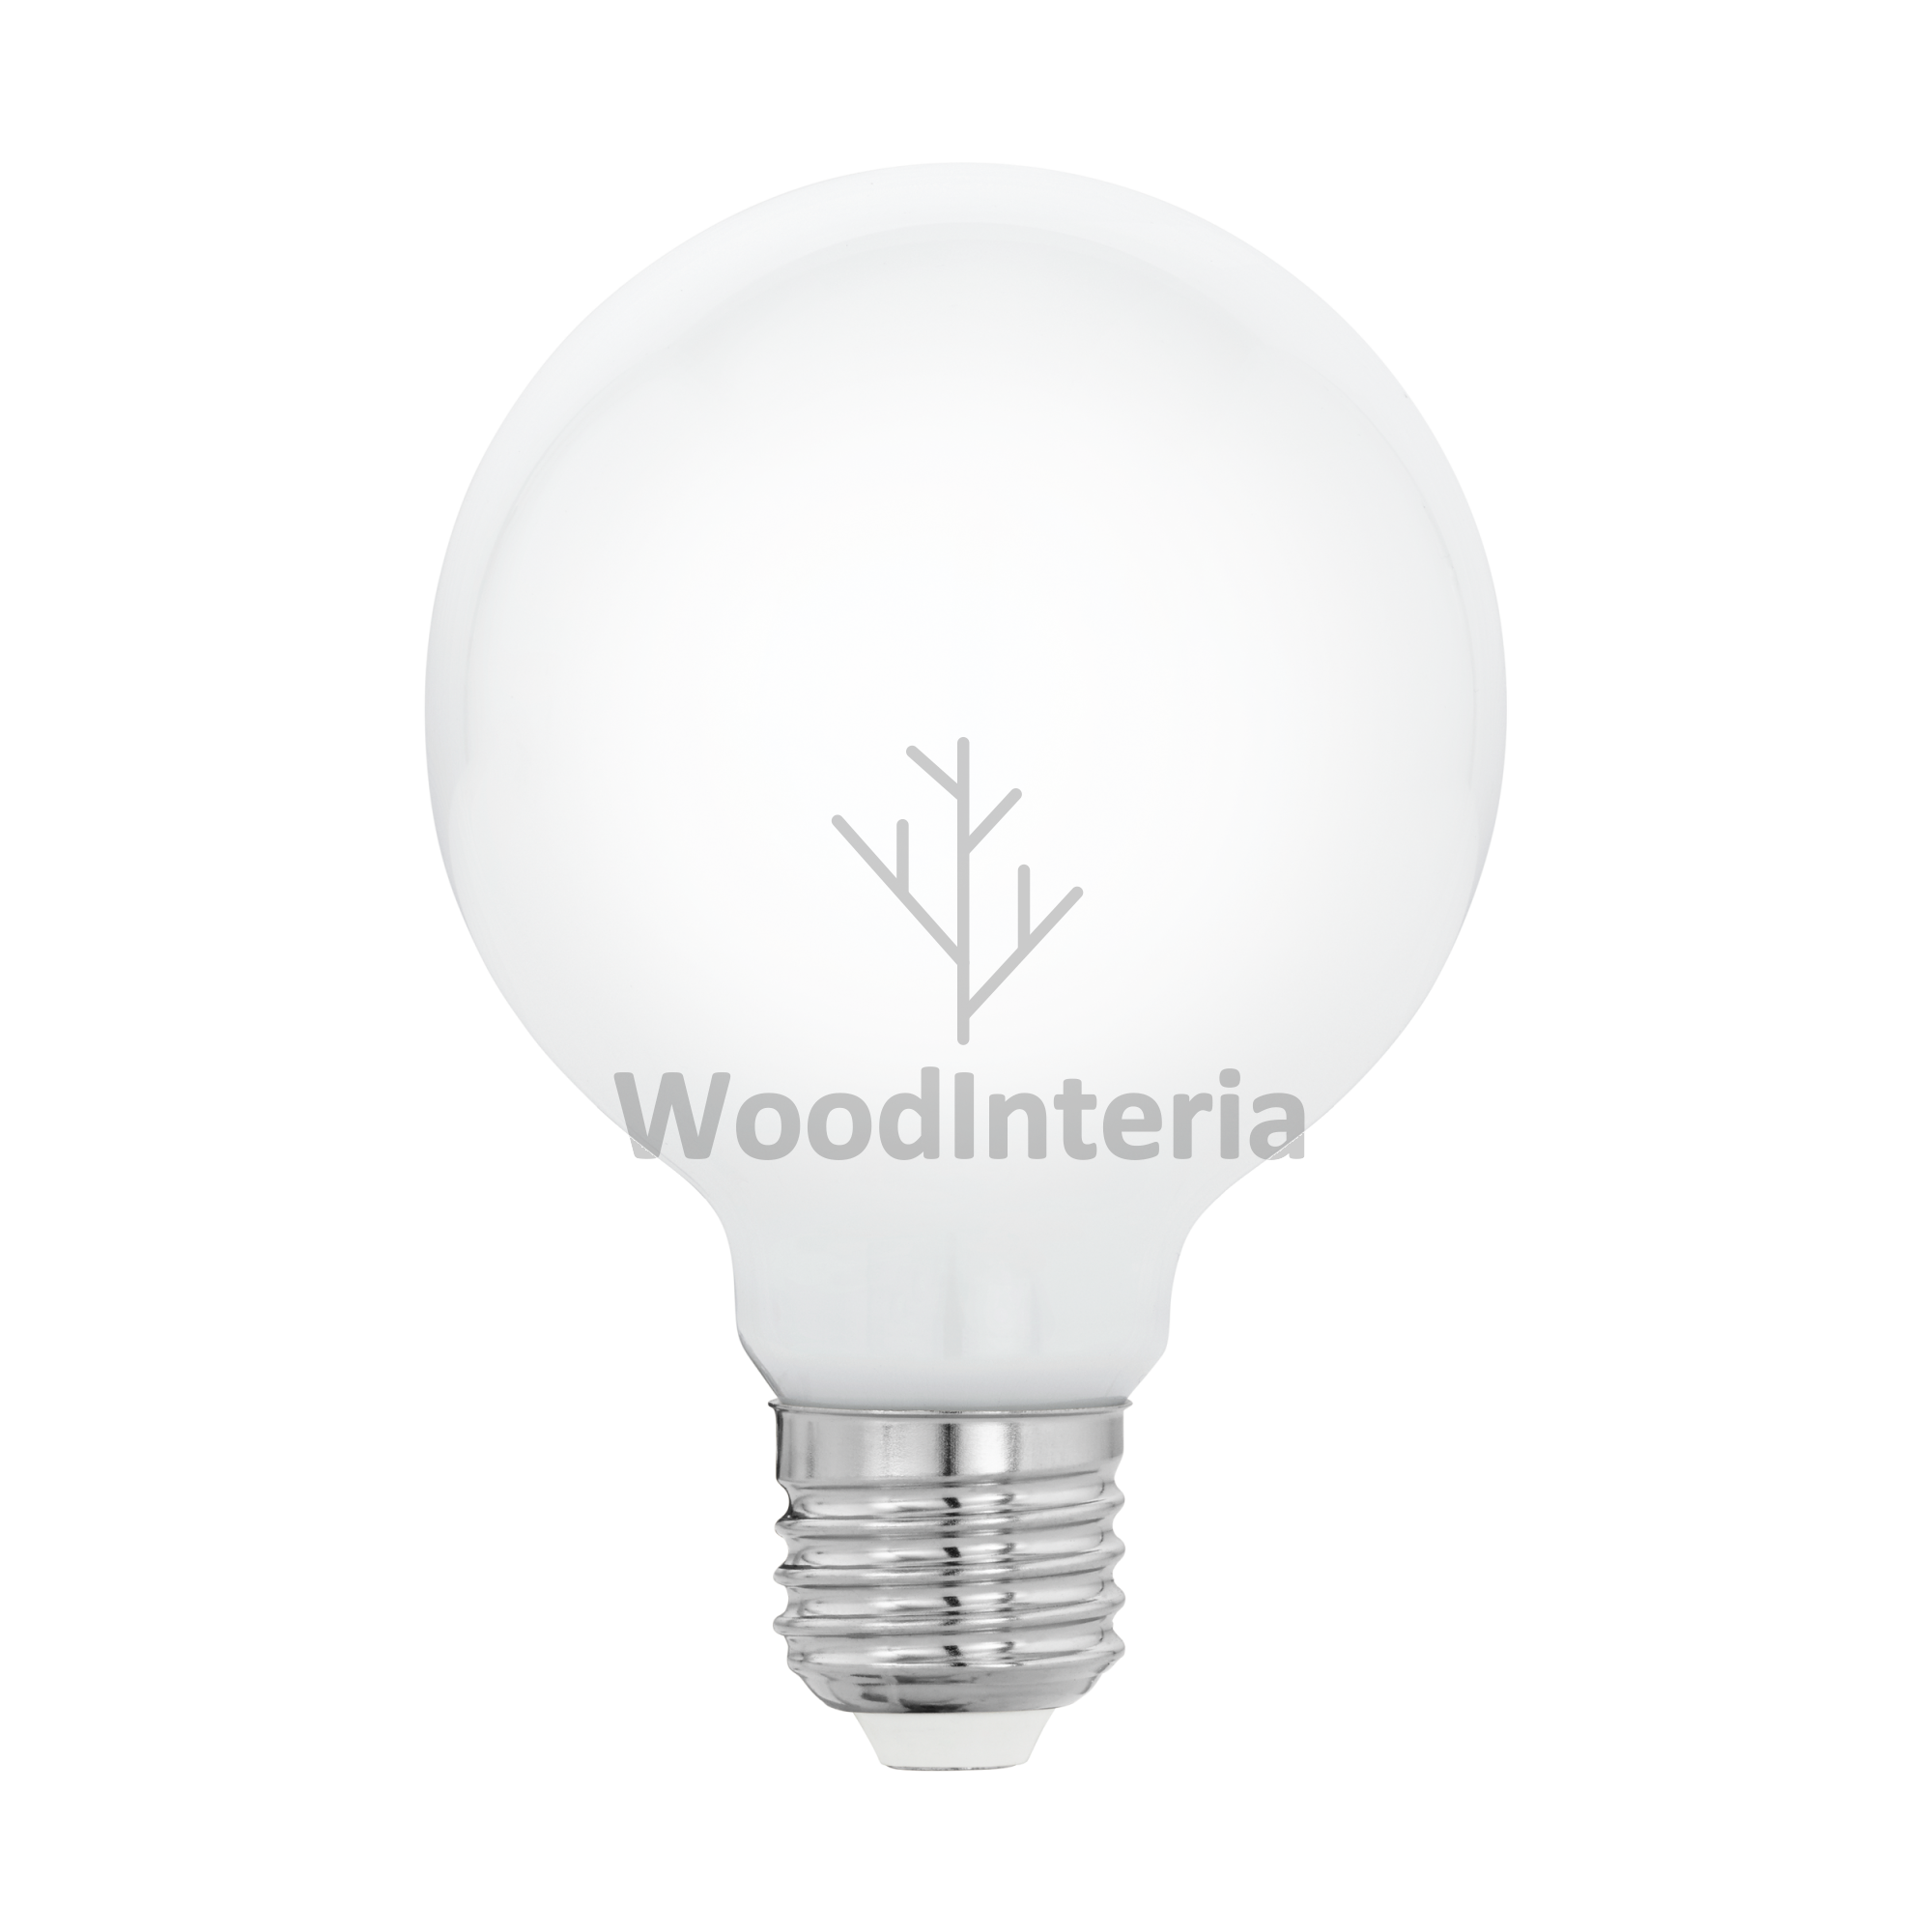 фото лампочка white bulb #3 led в скандинавском интерьере лофт эко | WoodInteria